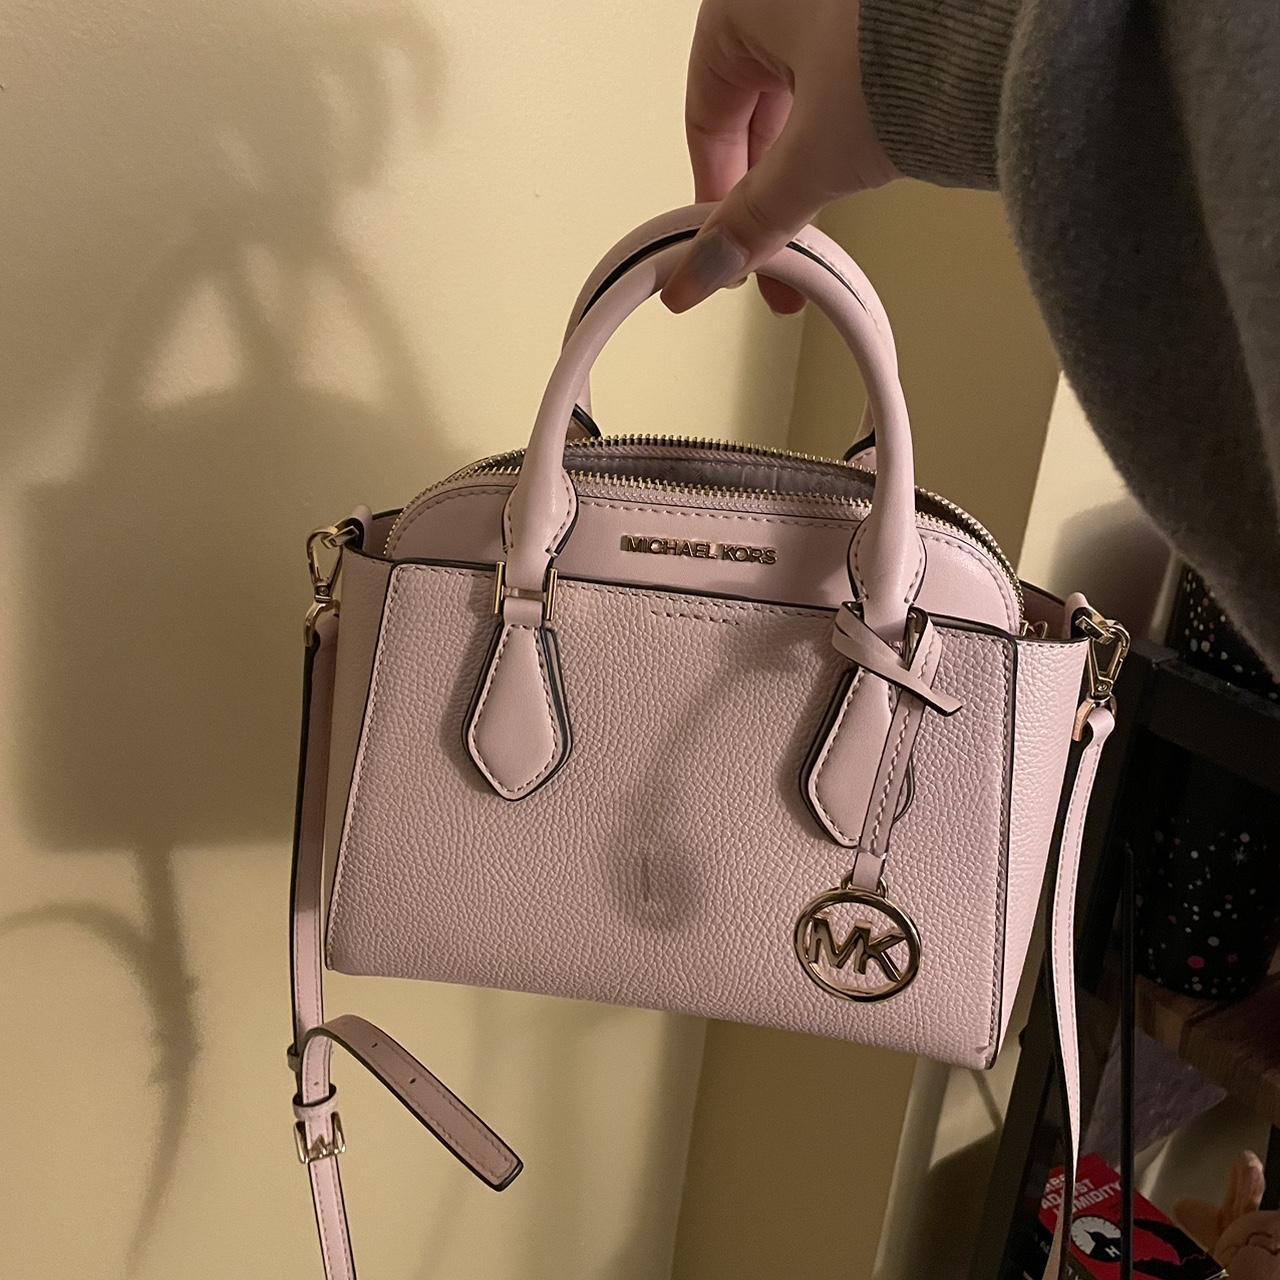 Handbag Designer By Michael Kors Size: Medium